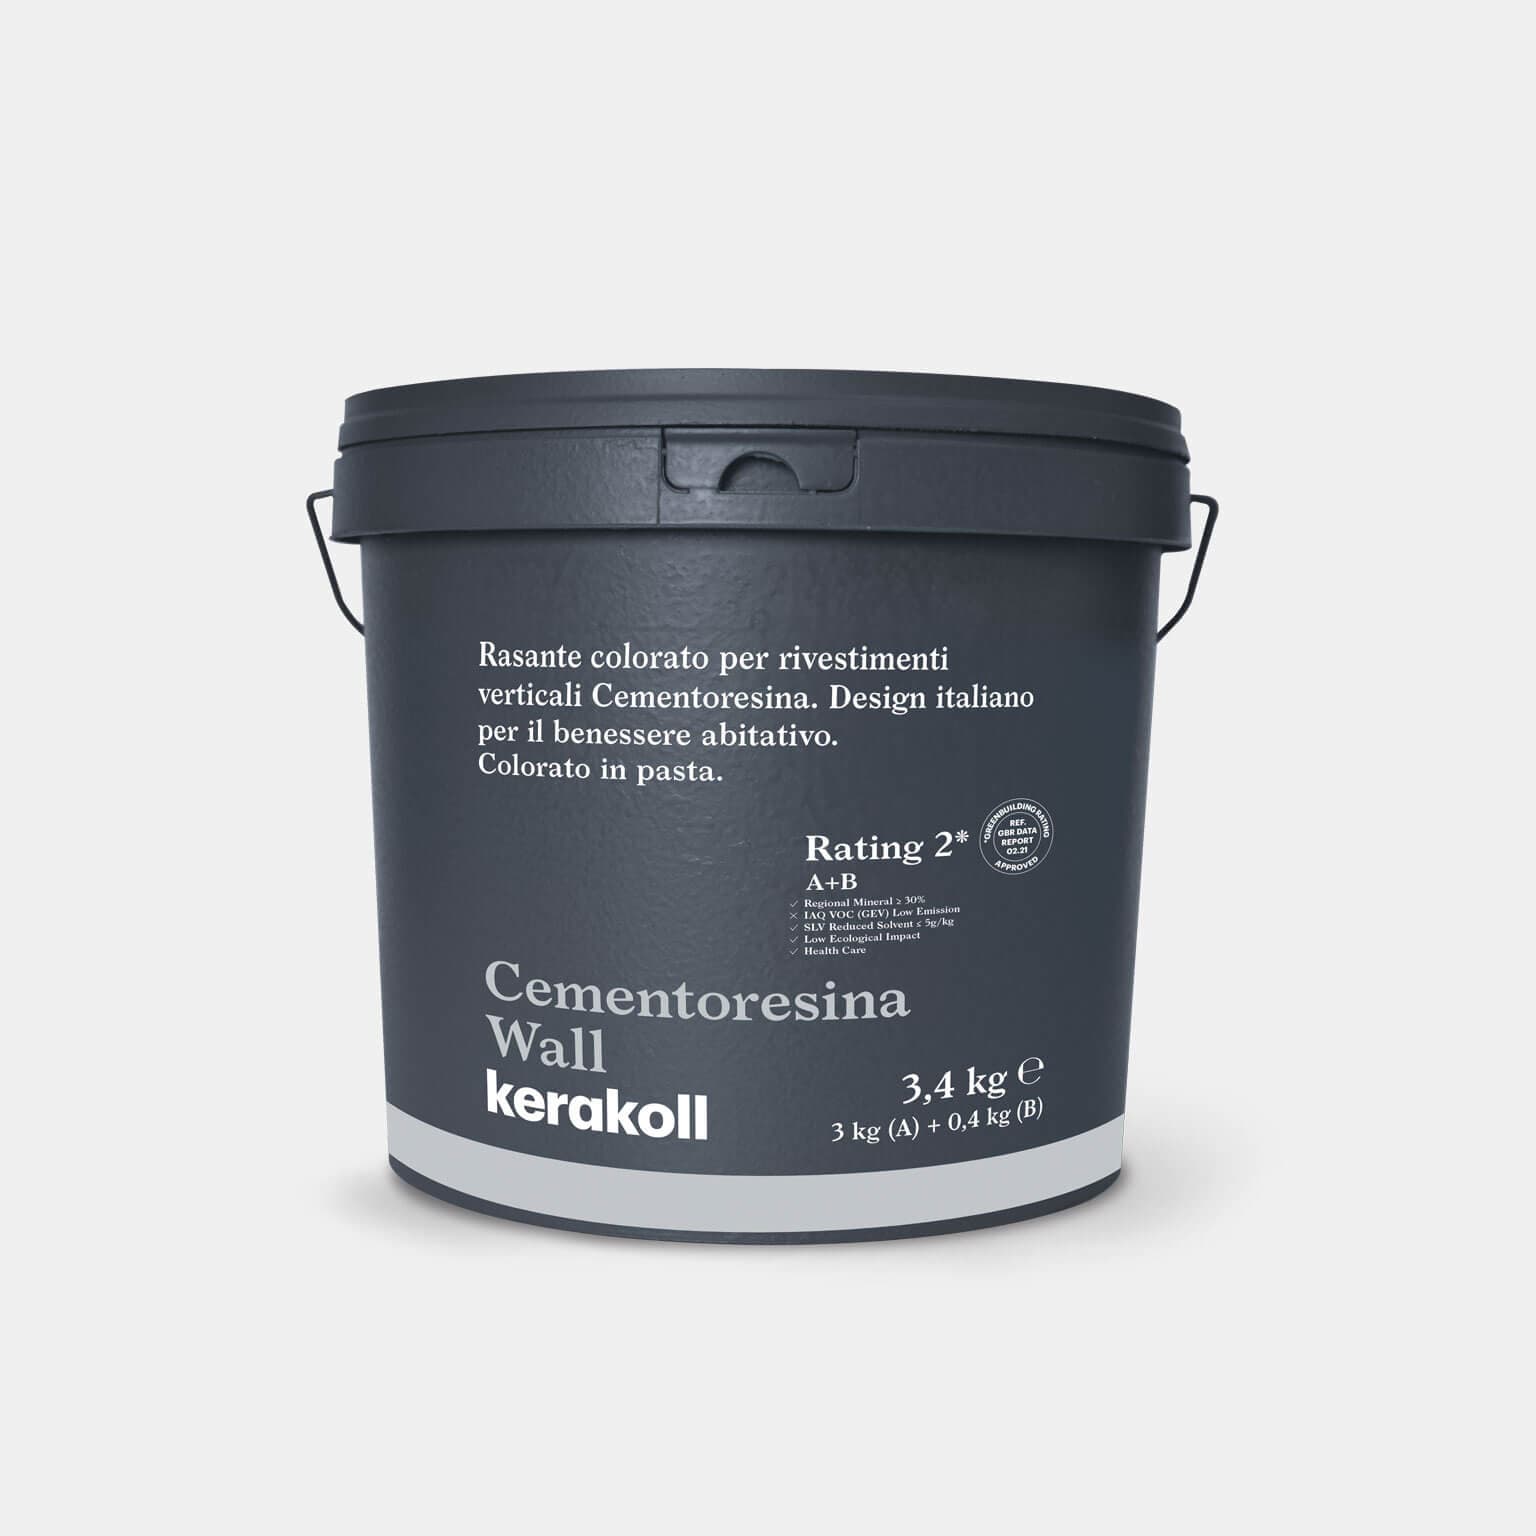 Színes befejező termék a Kerakoll Cementoresina Wall függőleges burkolatokhoz. 